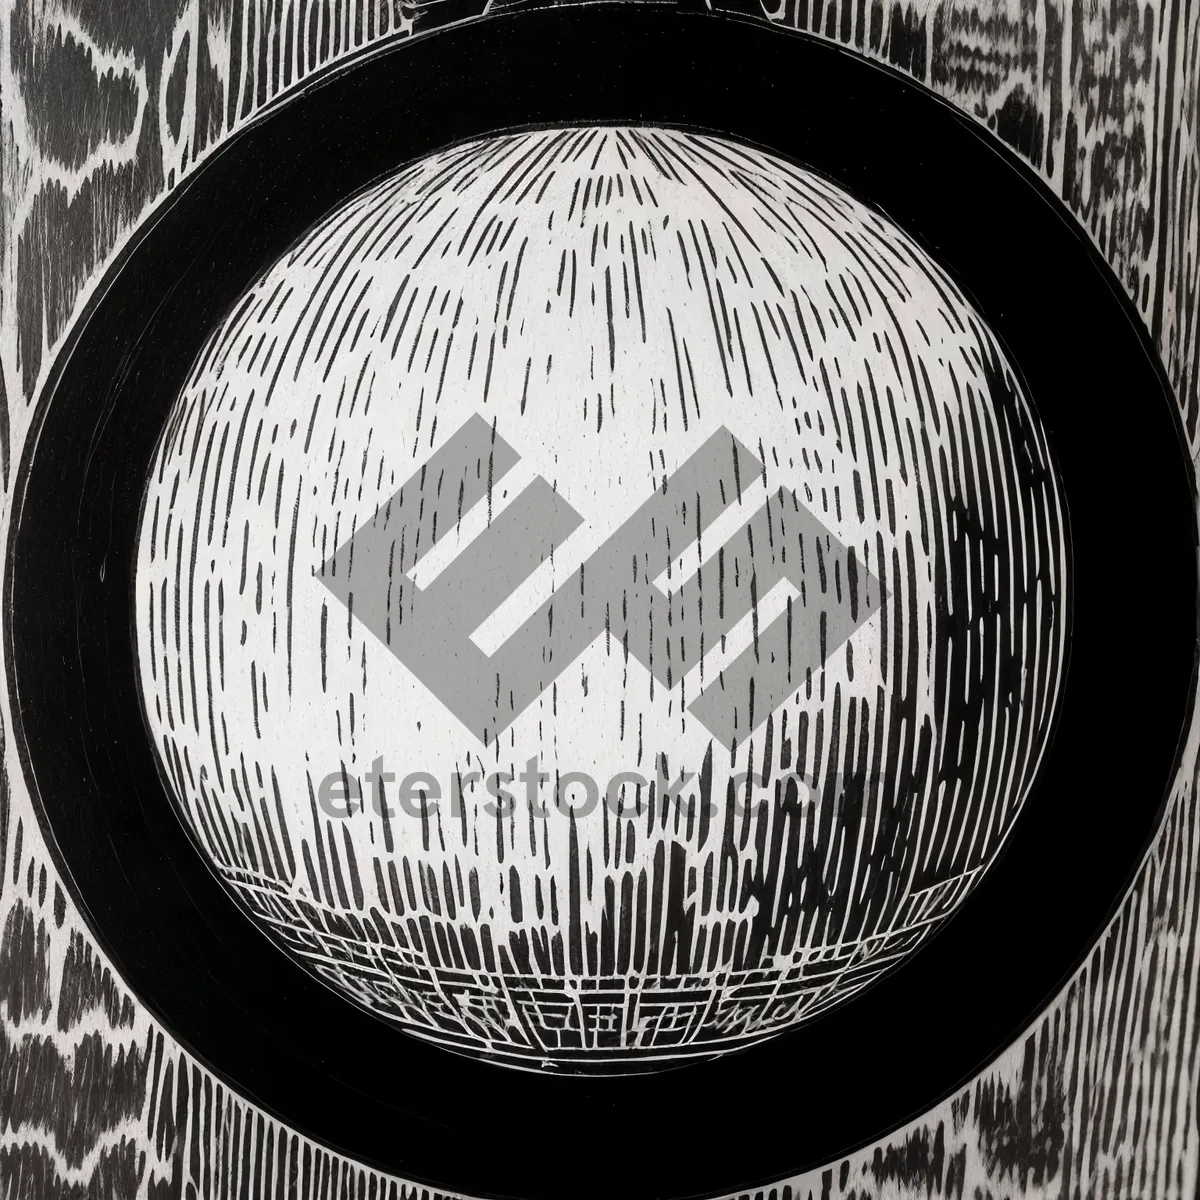 Futuristic Vinyl Groove: Digital Light Space Graphic Design